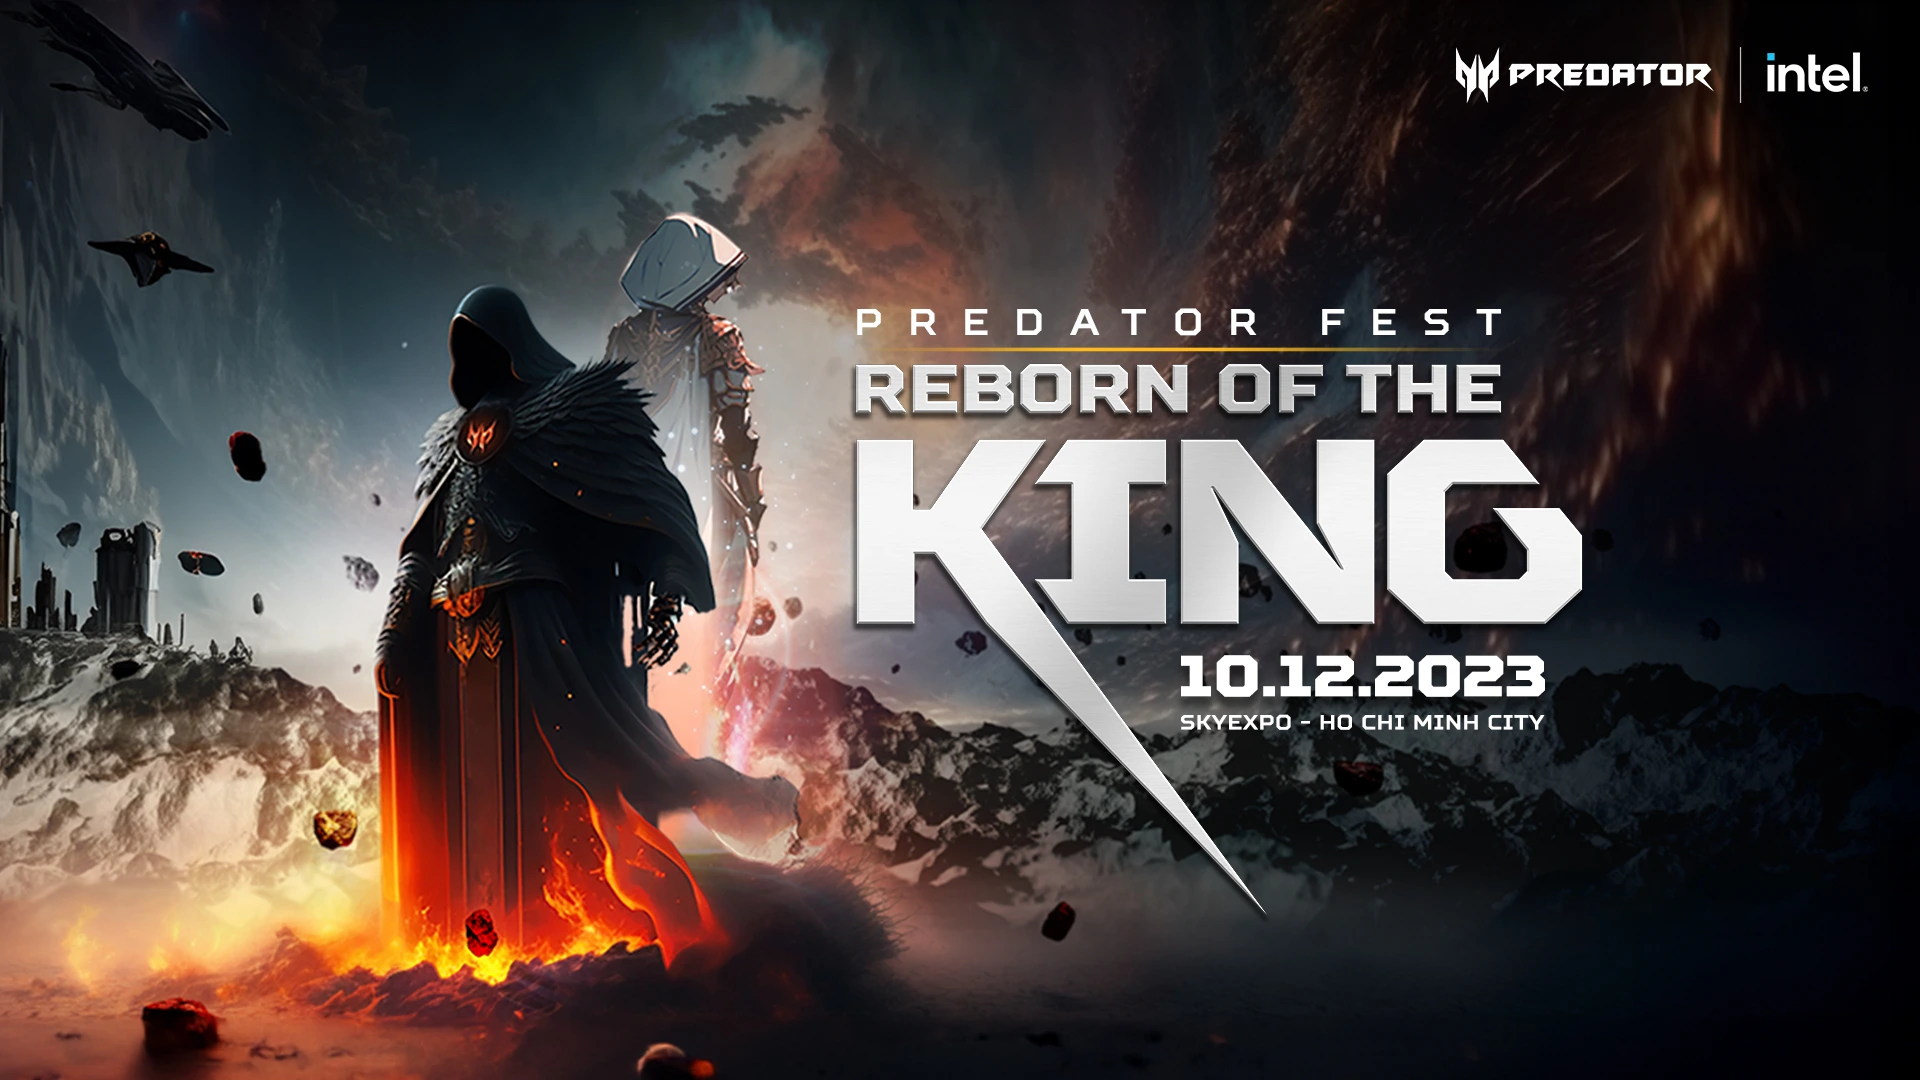 Predator Fest 2023 - Reborn of the King - 10.12.2023